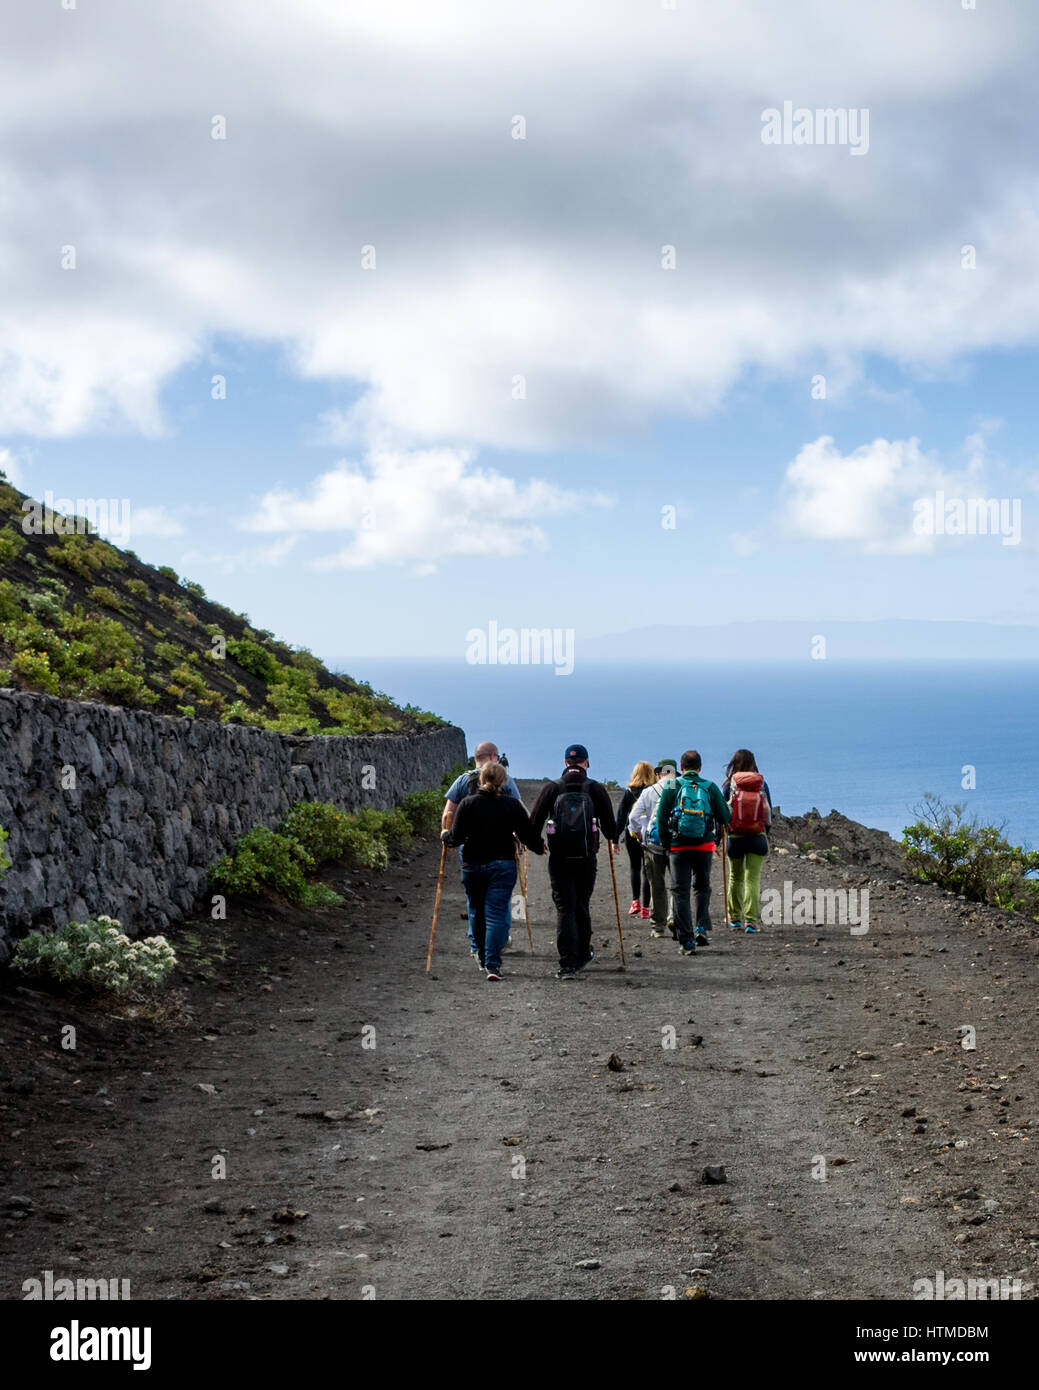 Sentier de randonnée, Fuencaliente. La Palma. Les randonneurs touristiques marchant le long d'une route volcanique sur leur randonnée guidée dans la région de Fuencaliente de La Palma. L'île voisine de Gomera est visible à l'horizon face à la mer. Banque D'Images